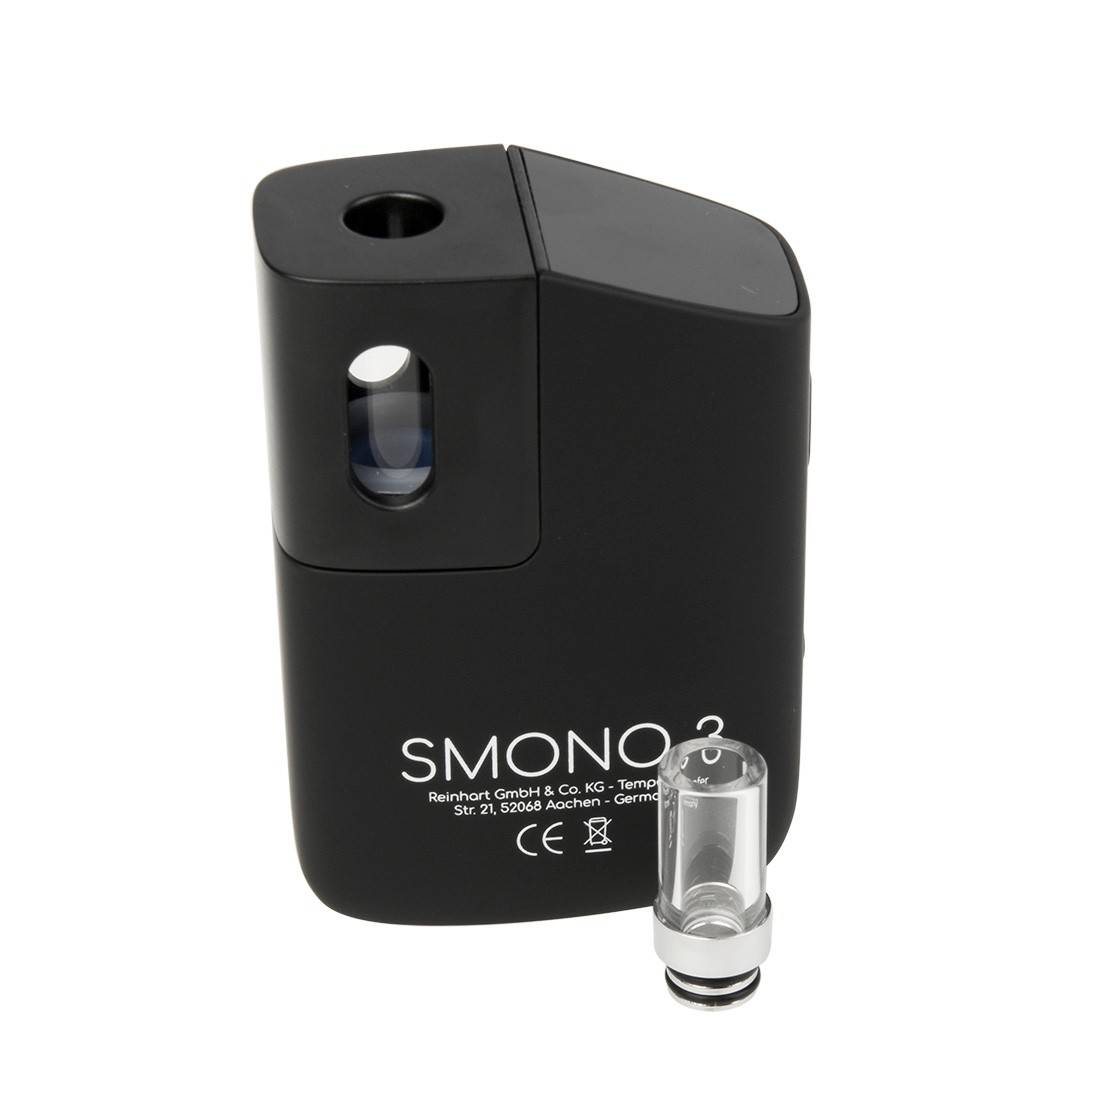 Vaporisateur Smono N°3 - vaporizer portable à chauffe par